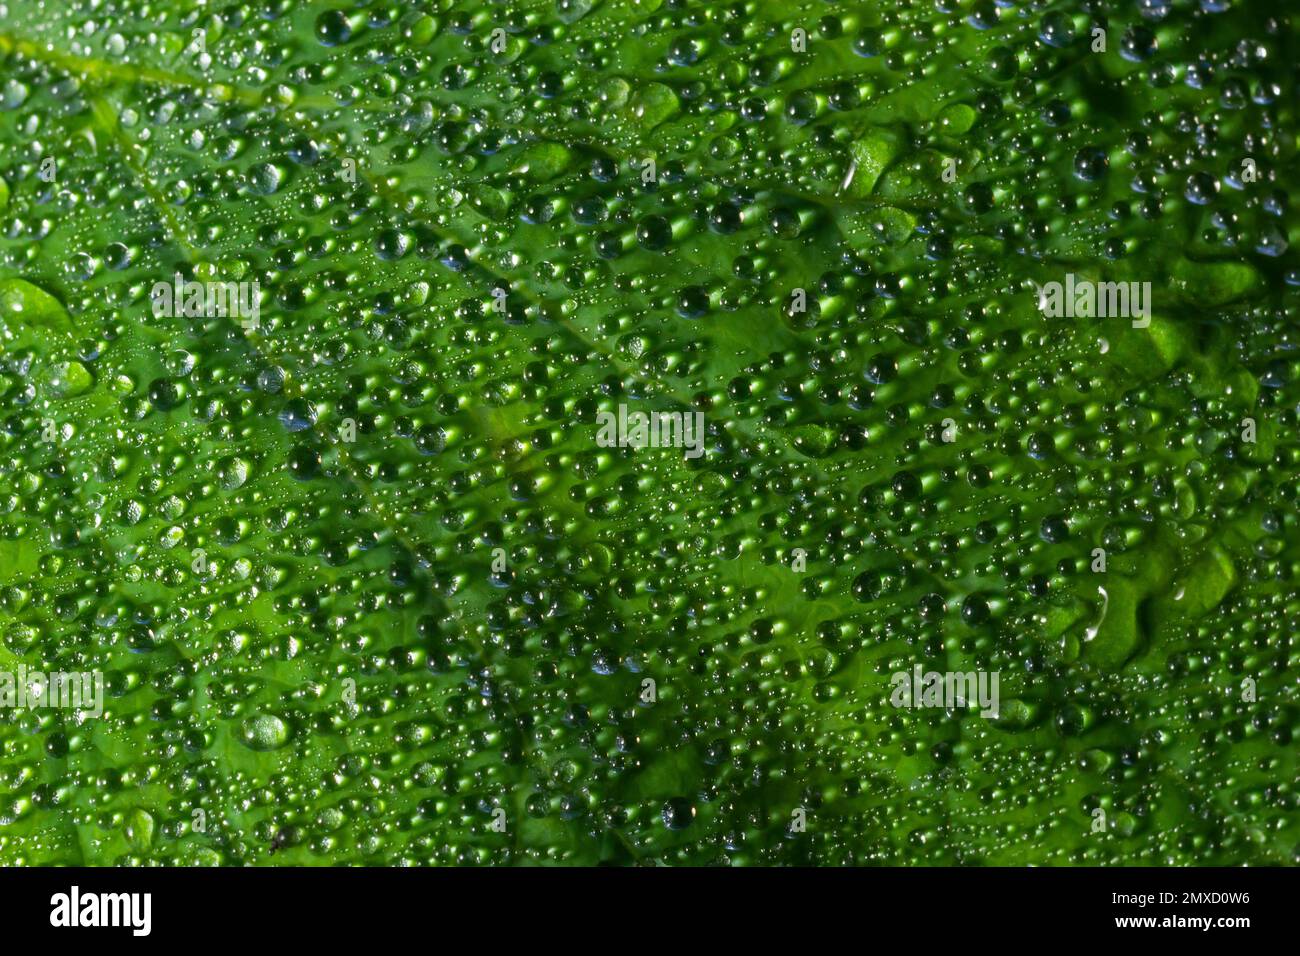 De grandes belles gouttes de pluie transparente de l'eau sur une feuille verte macro. Gouttes de rosée du matin luisent au soleil. Belle texture de la feuille dans la nature. Banque D'Images